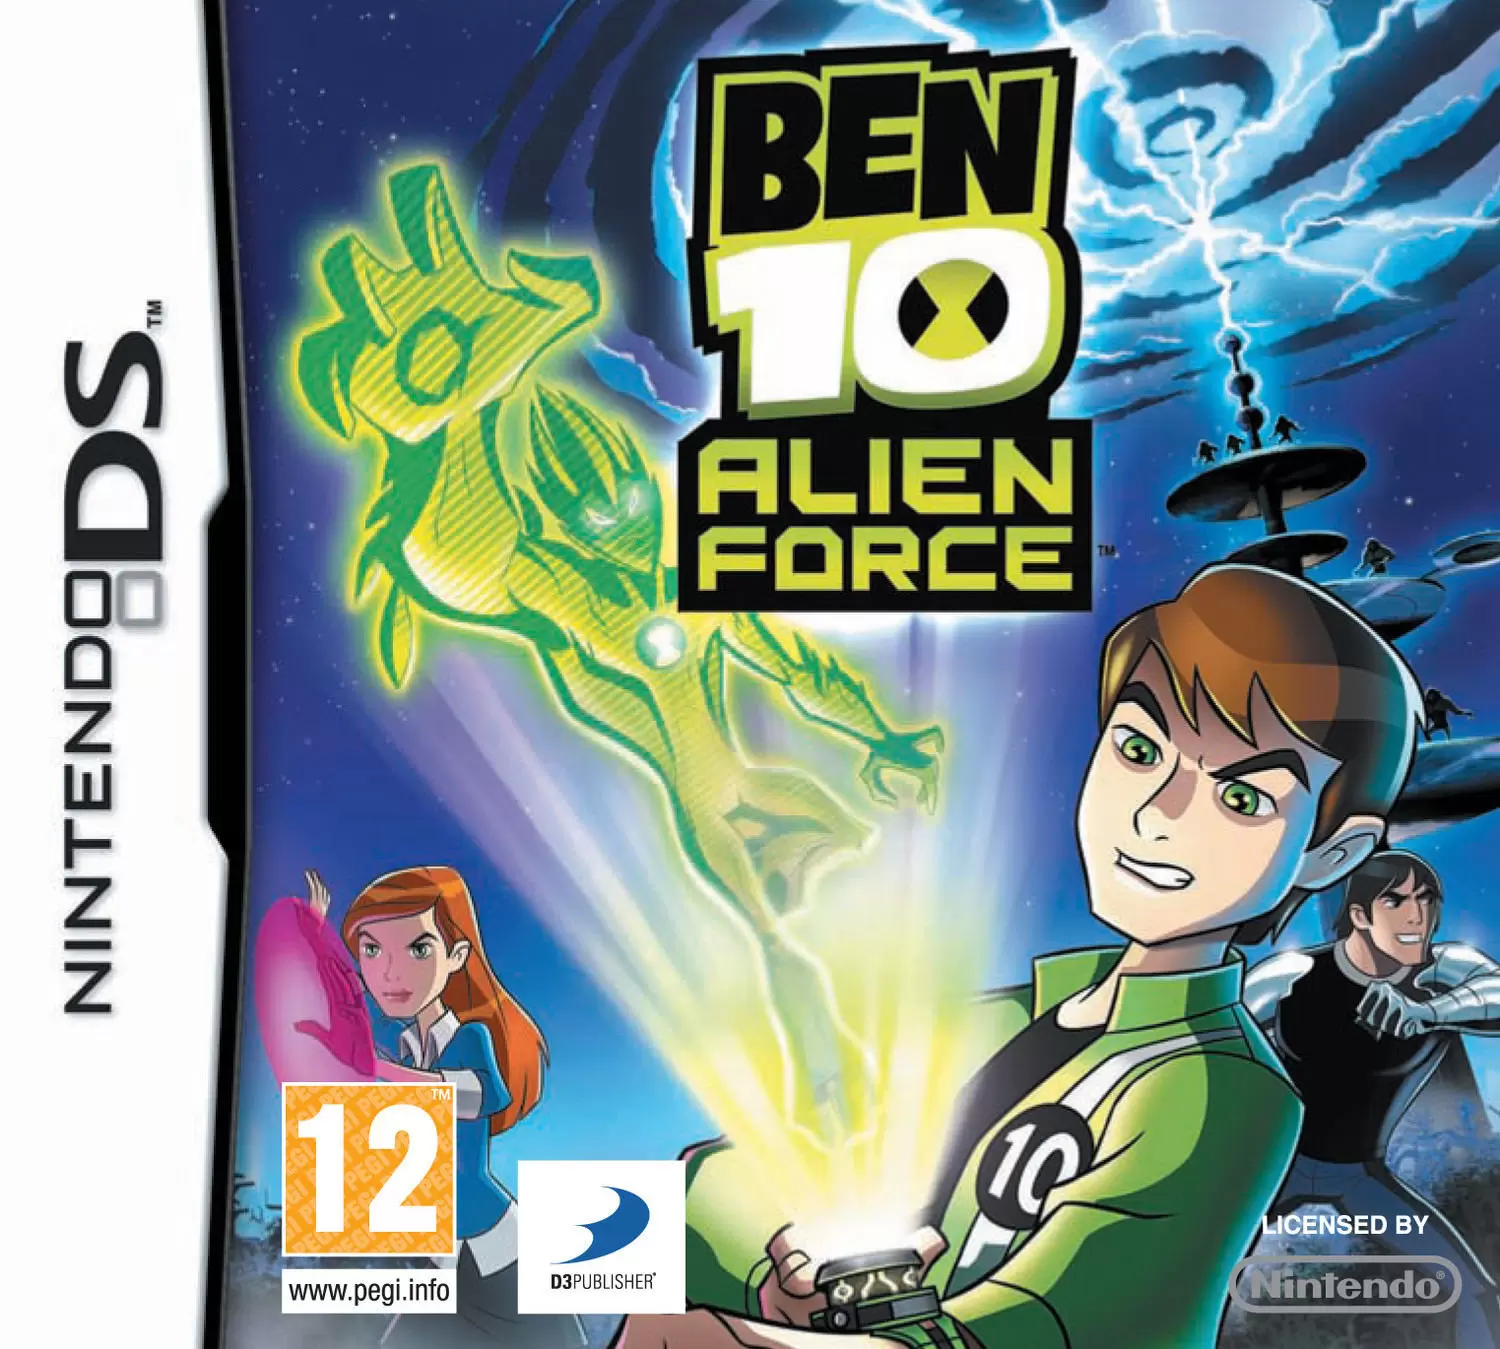 Nintendo DS Games - Ben 10: Alien Force